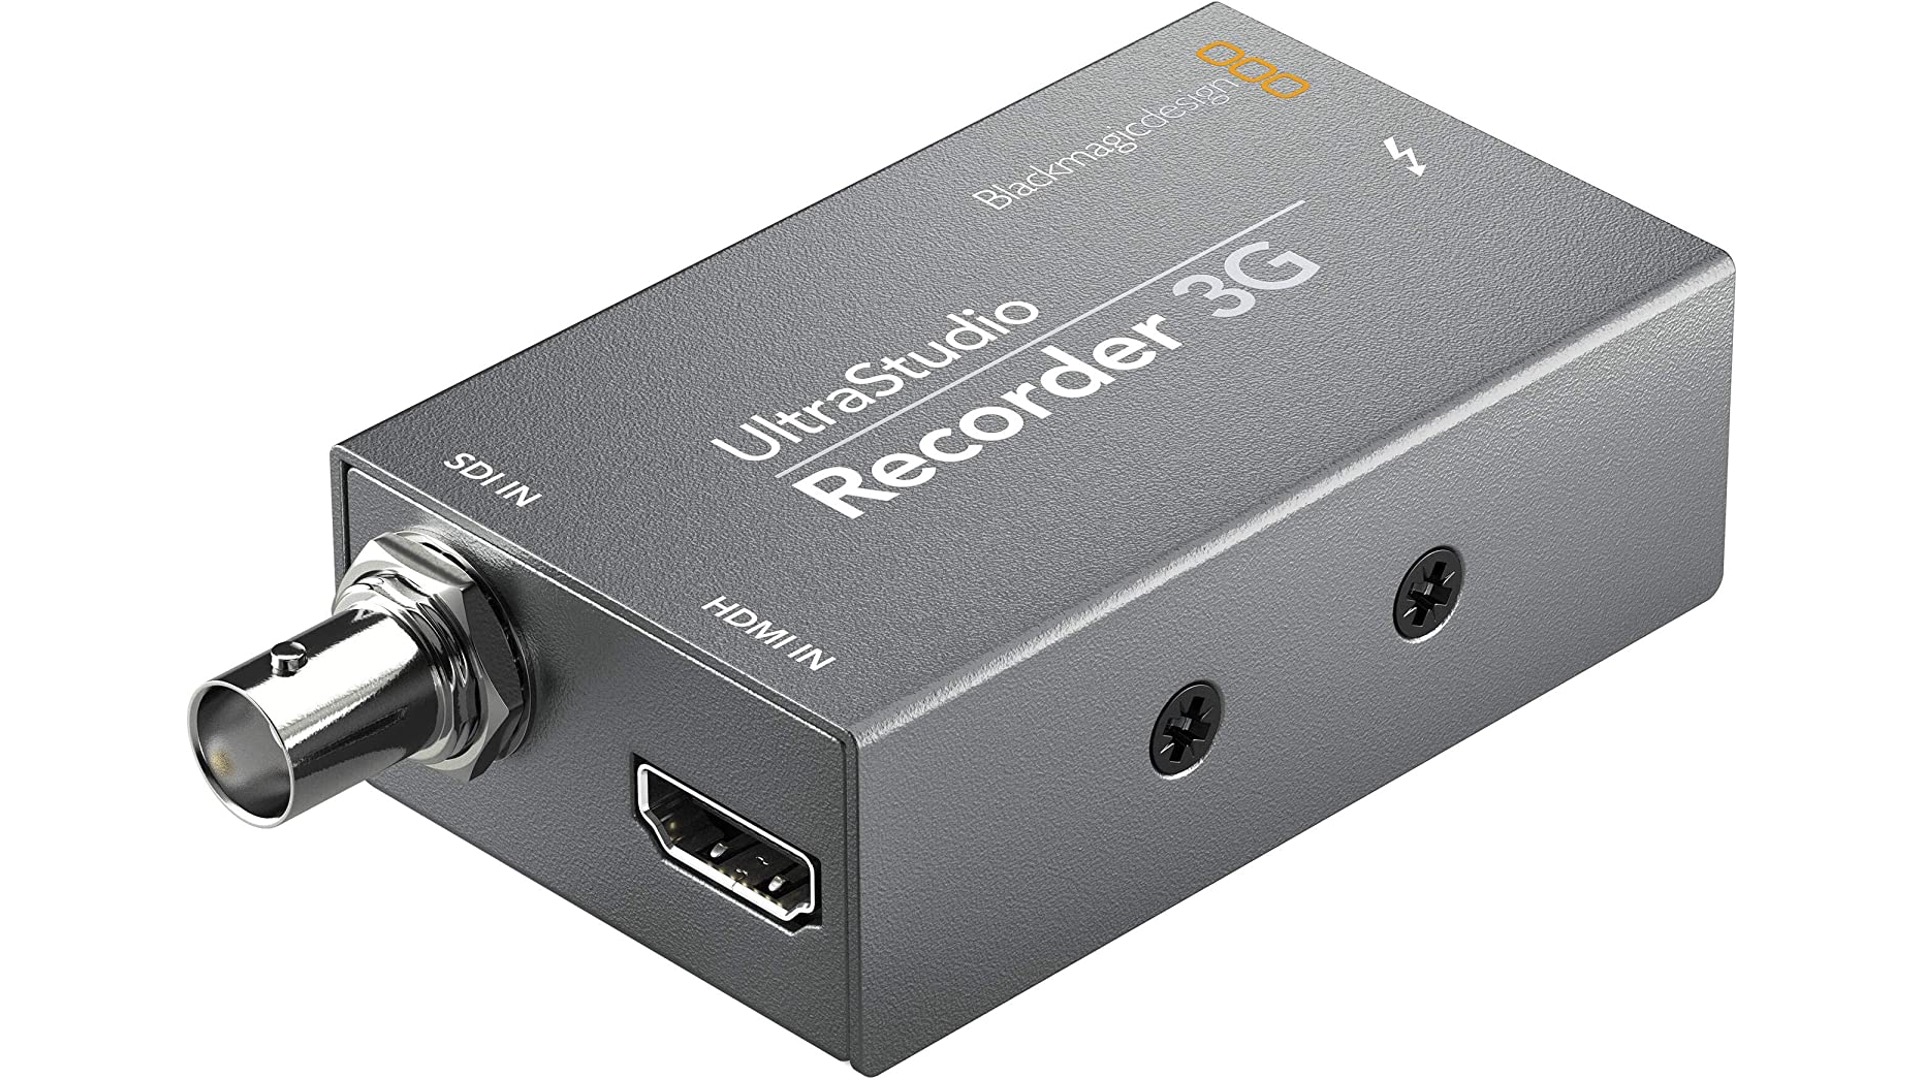 【新規入荷】SDI/HDMIビデオキャプチャー Blackmagic Design UltraStudio Recorder 3G 新規レンタル開始しました！